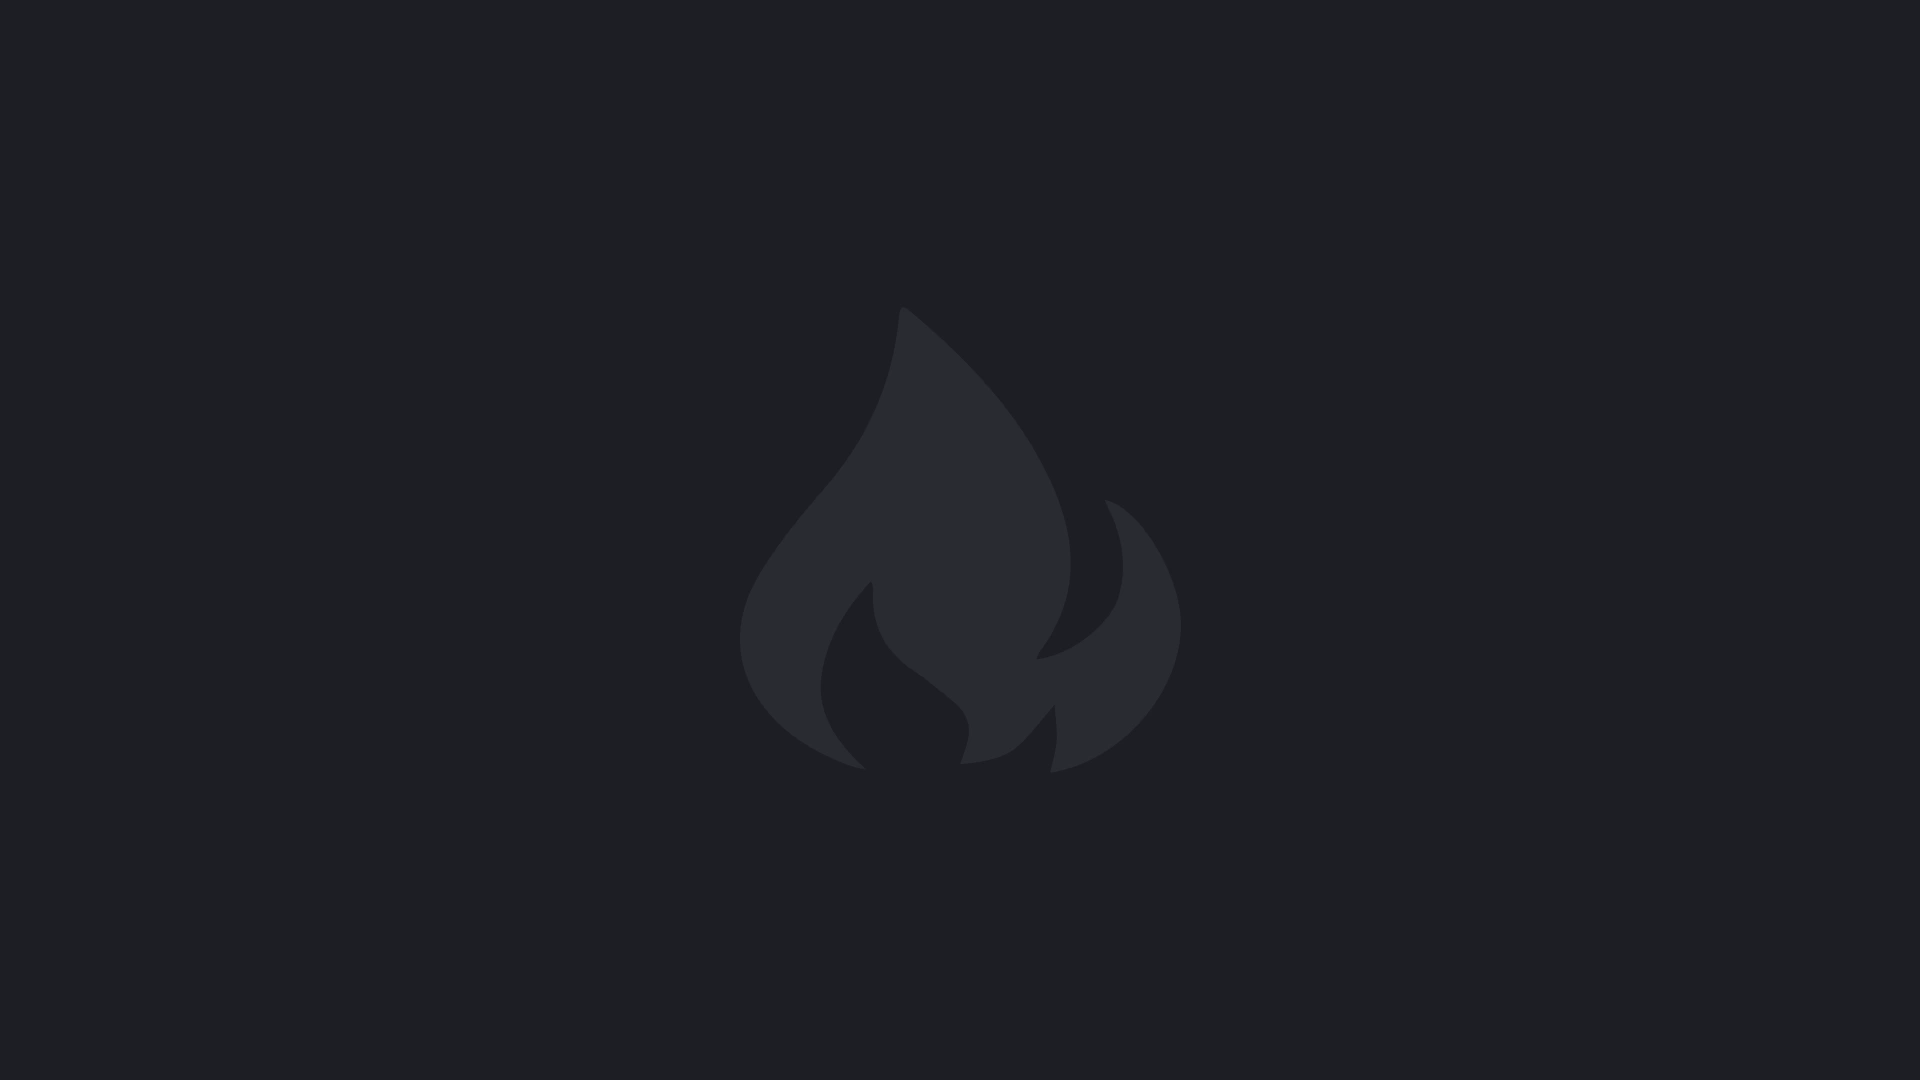 GitHub Action deploying Angular App to Firebase Hosting